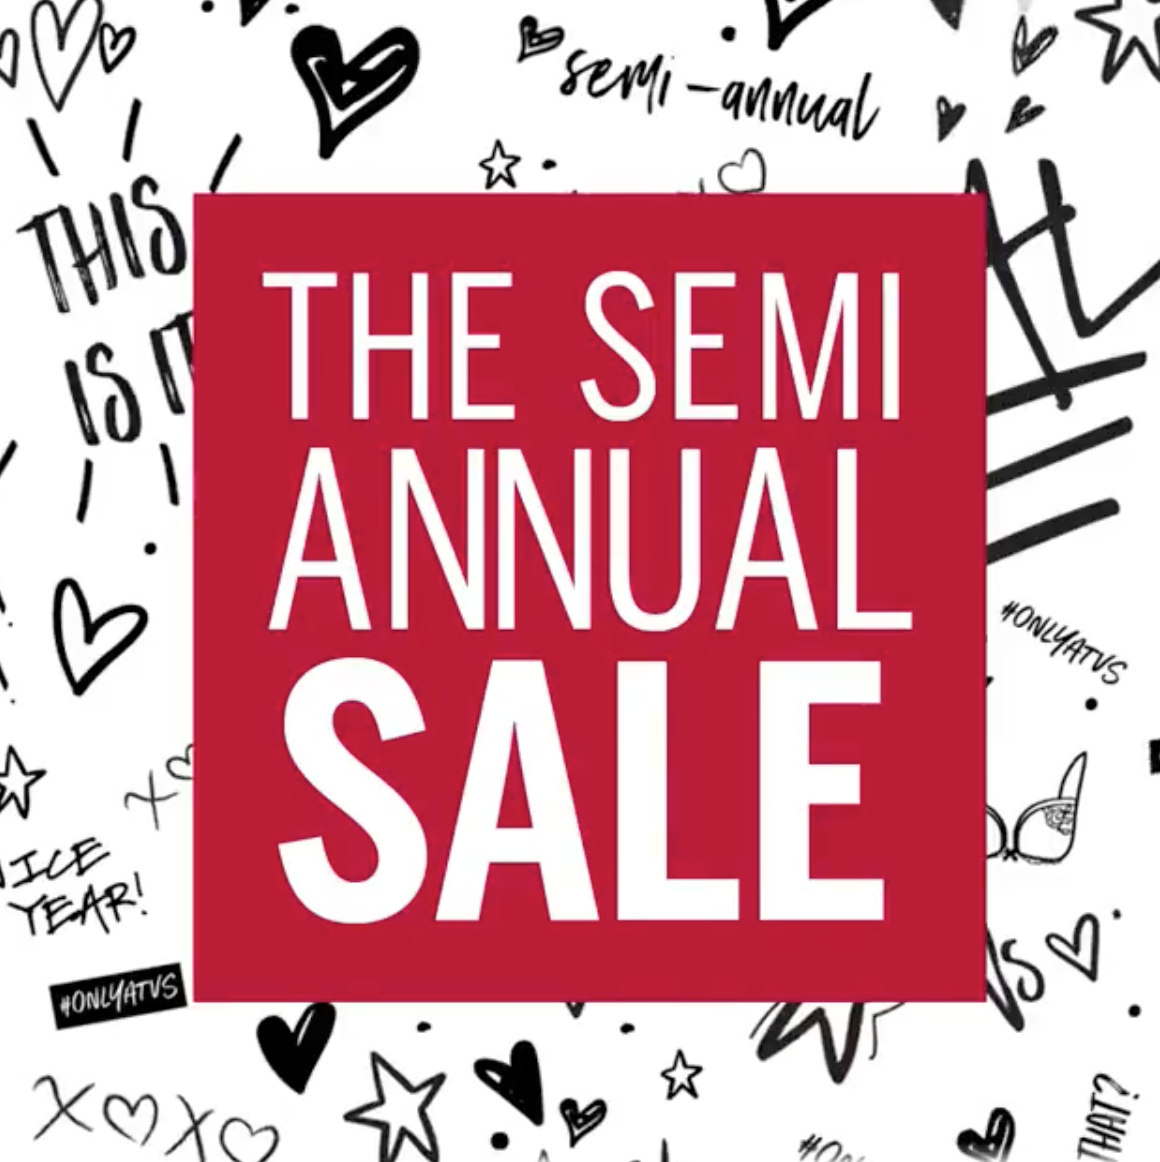 Victoria's Secret Semi-Annual Sale: How To Save